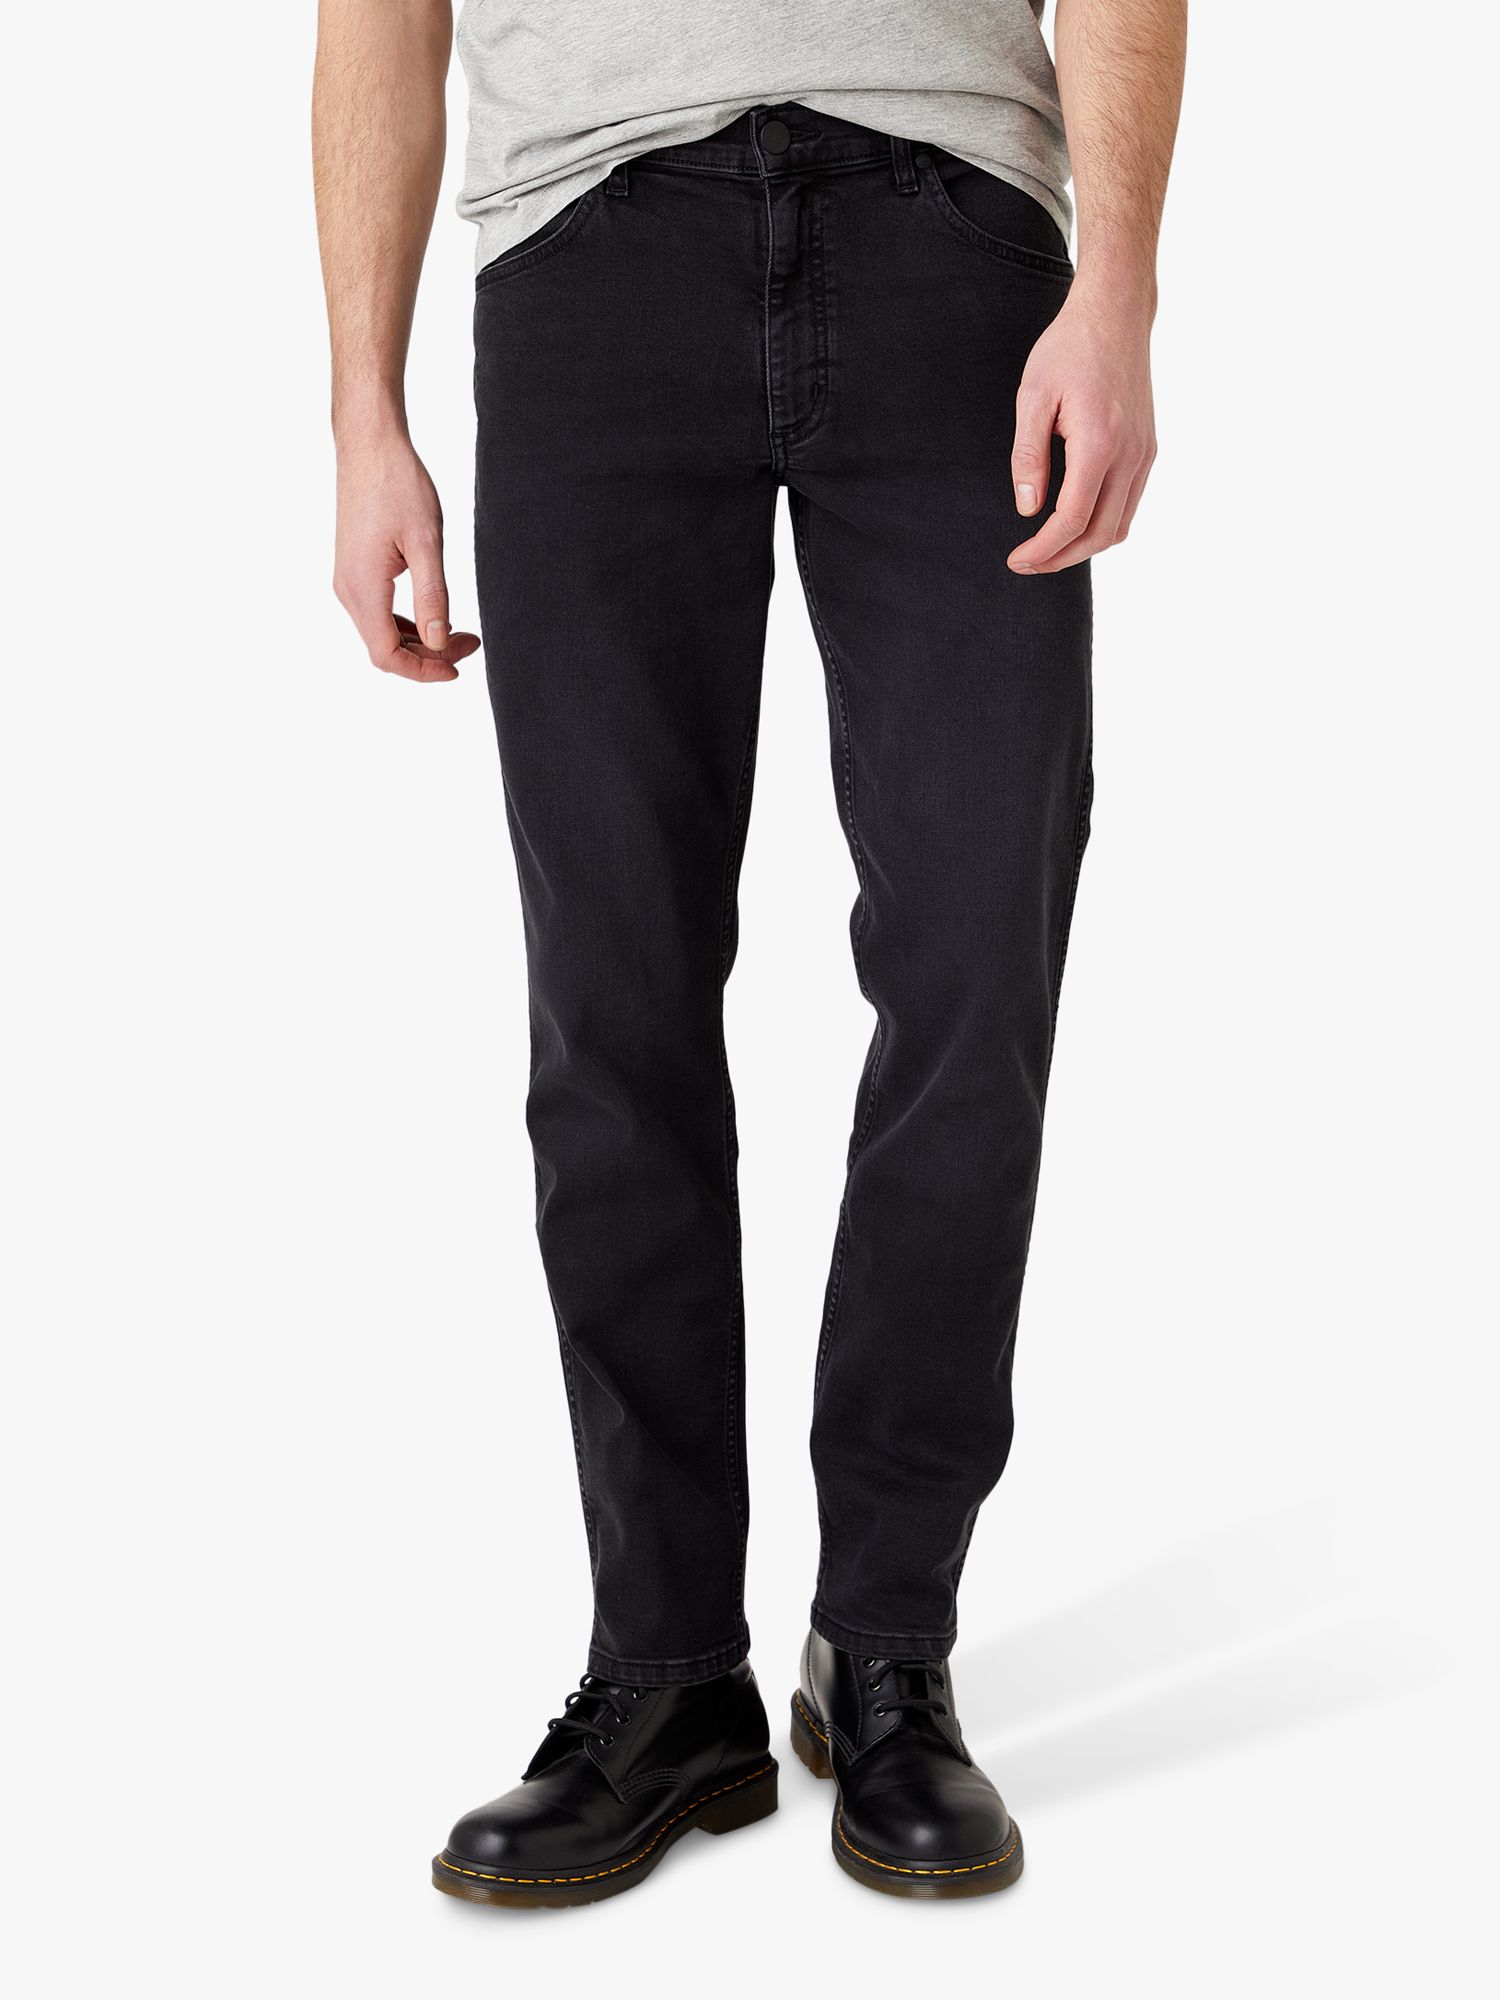 Wrangler Greensboro Slim Fit Denim Jeans, Black at John Lewis & Partners